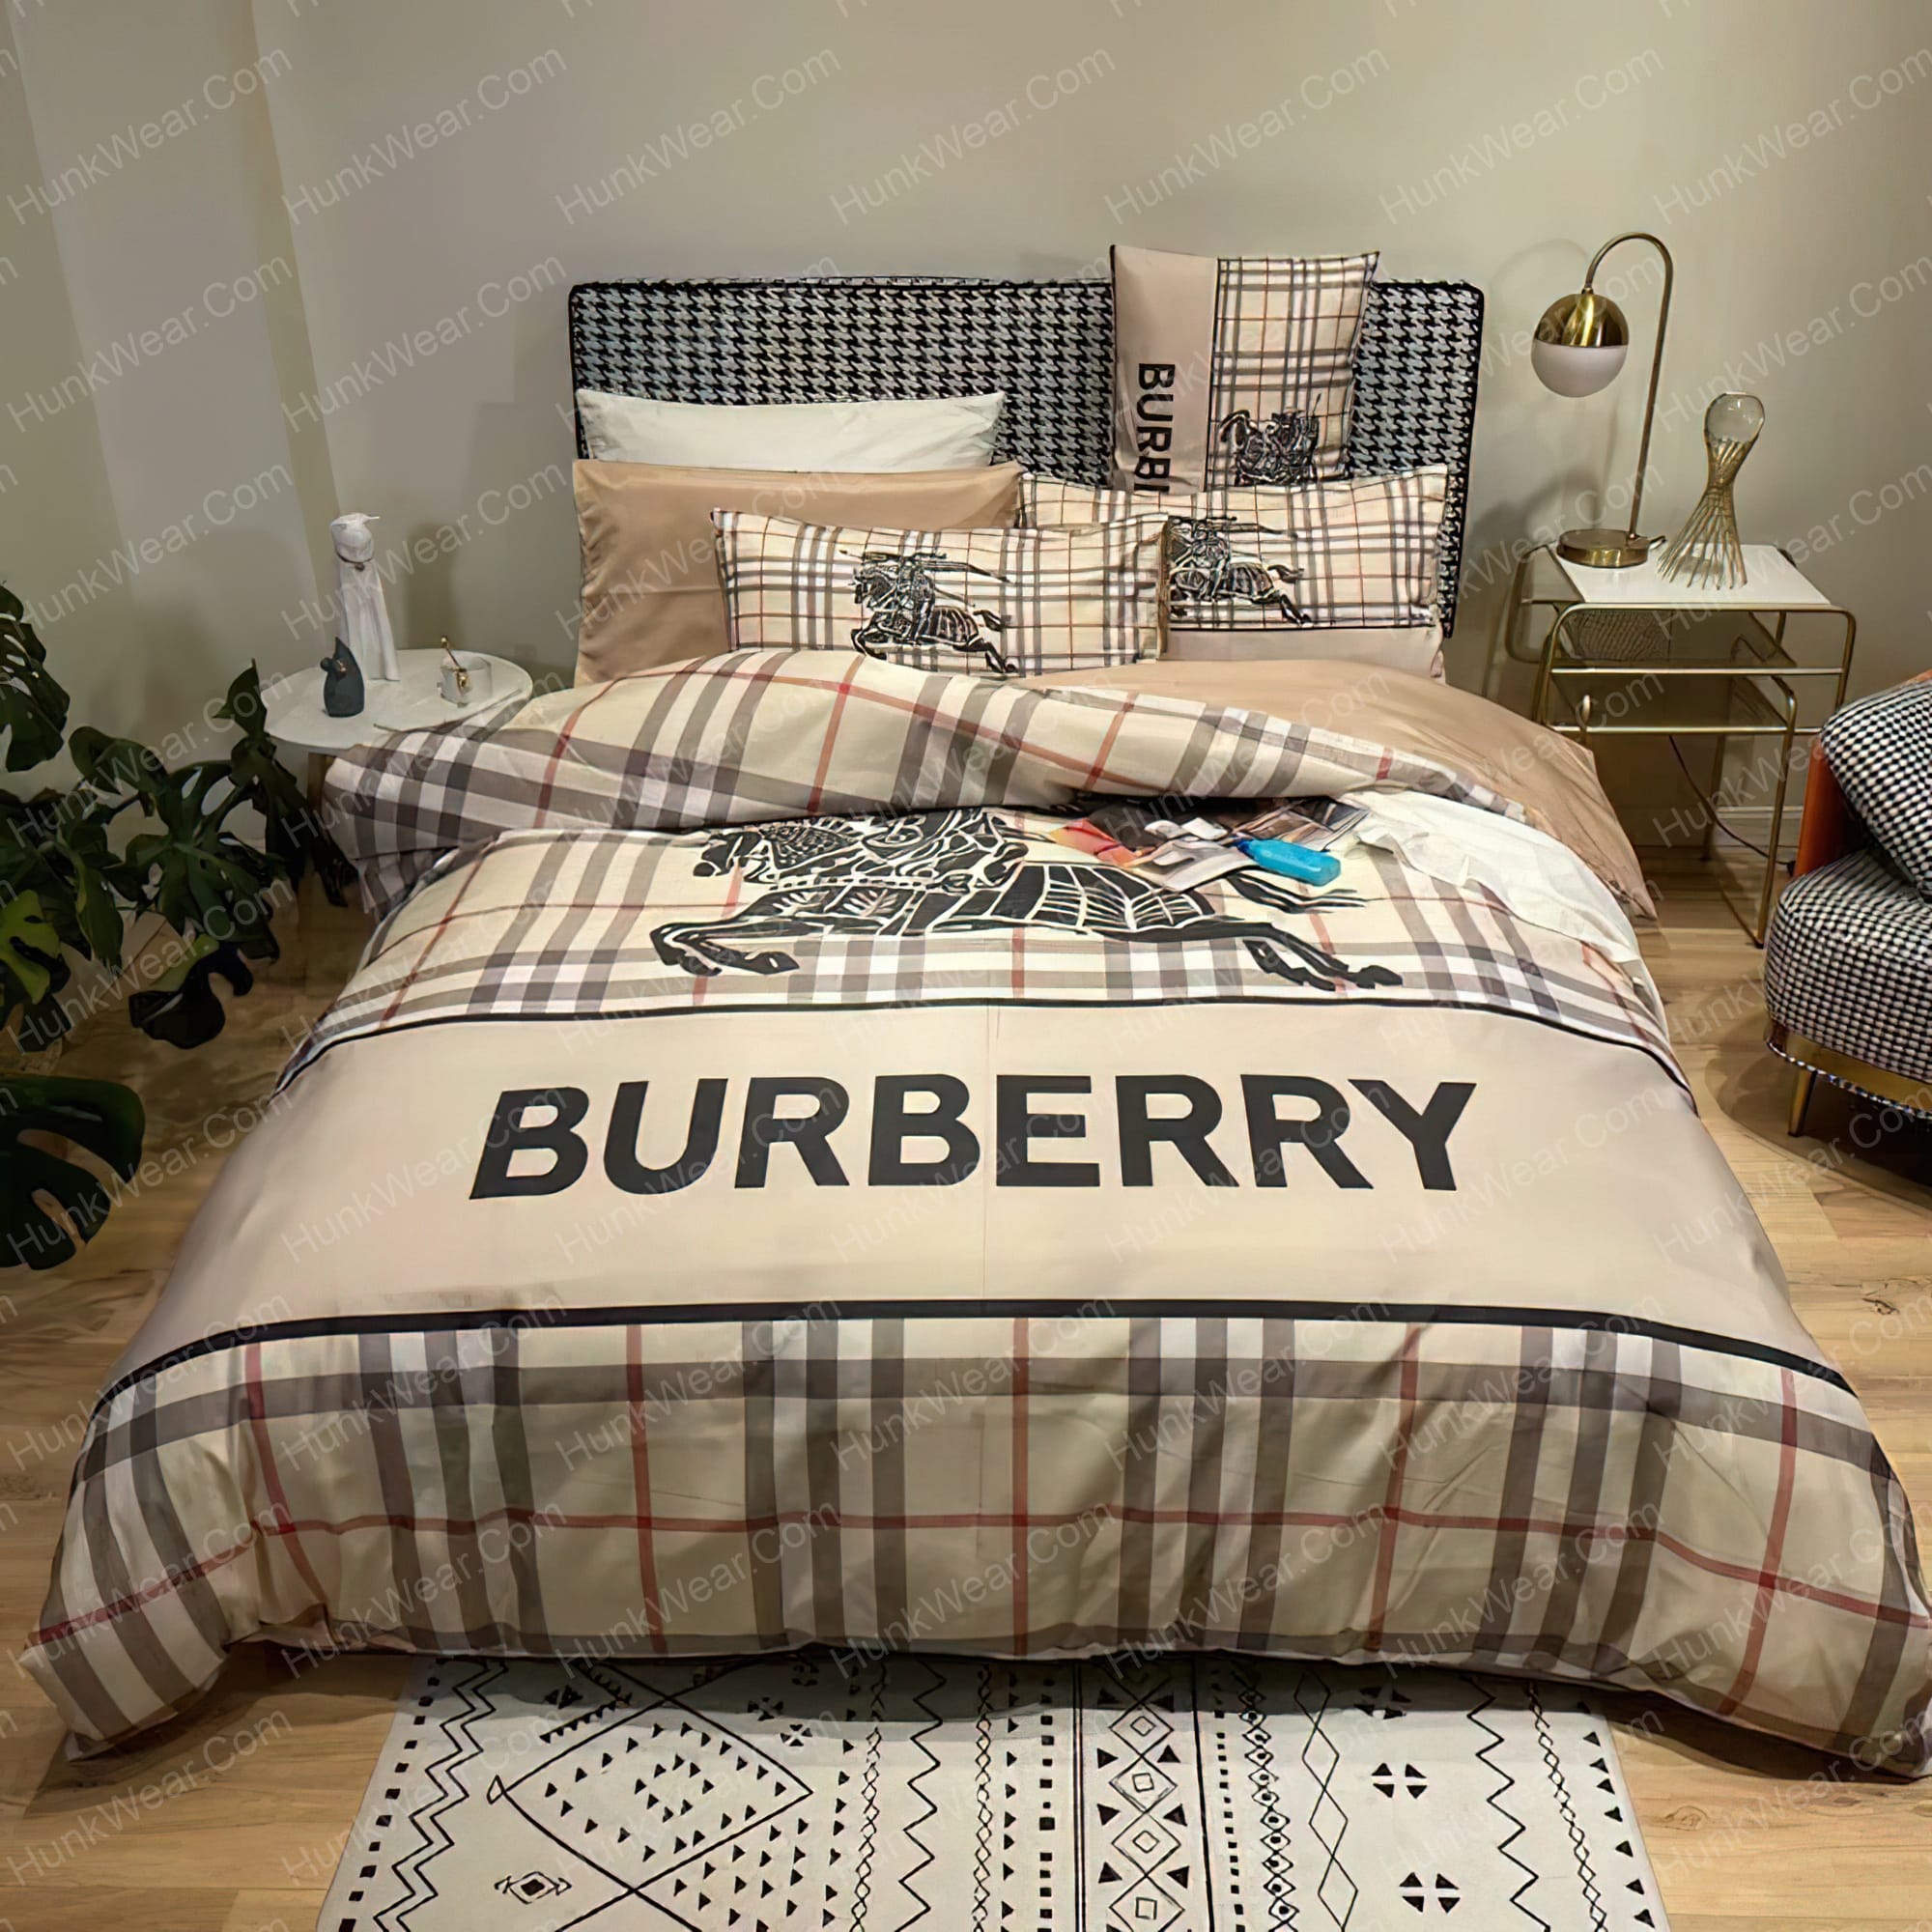 Burberry Bed Sets Bedding Sets